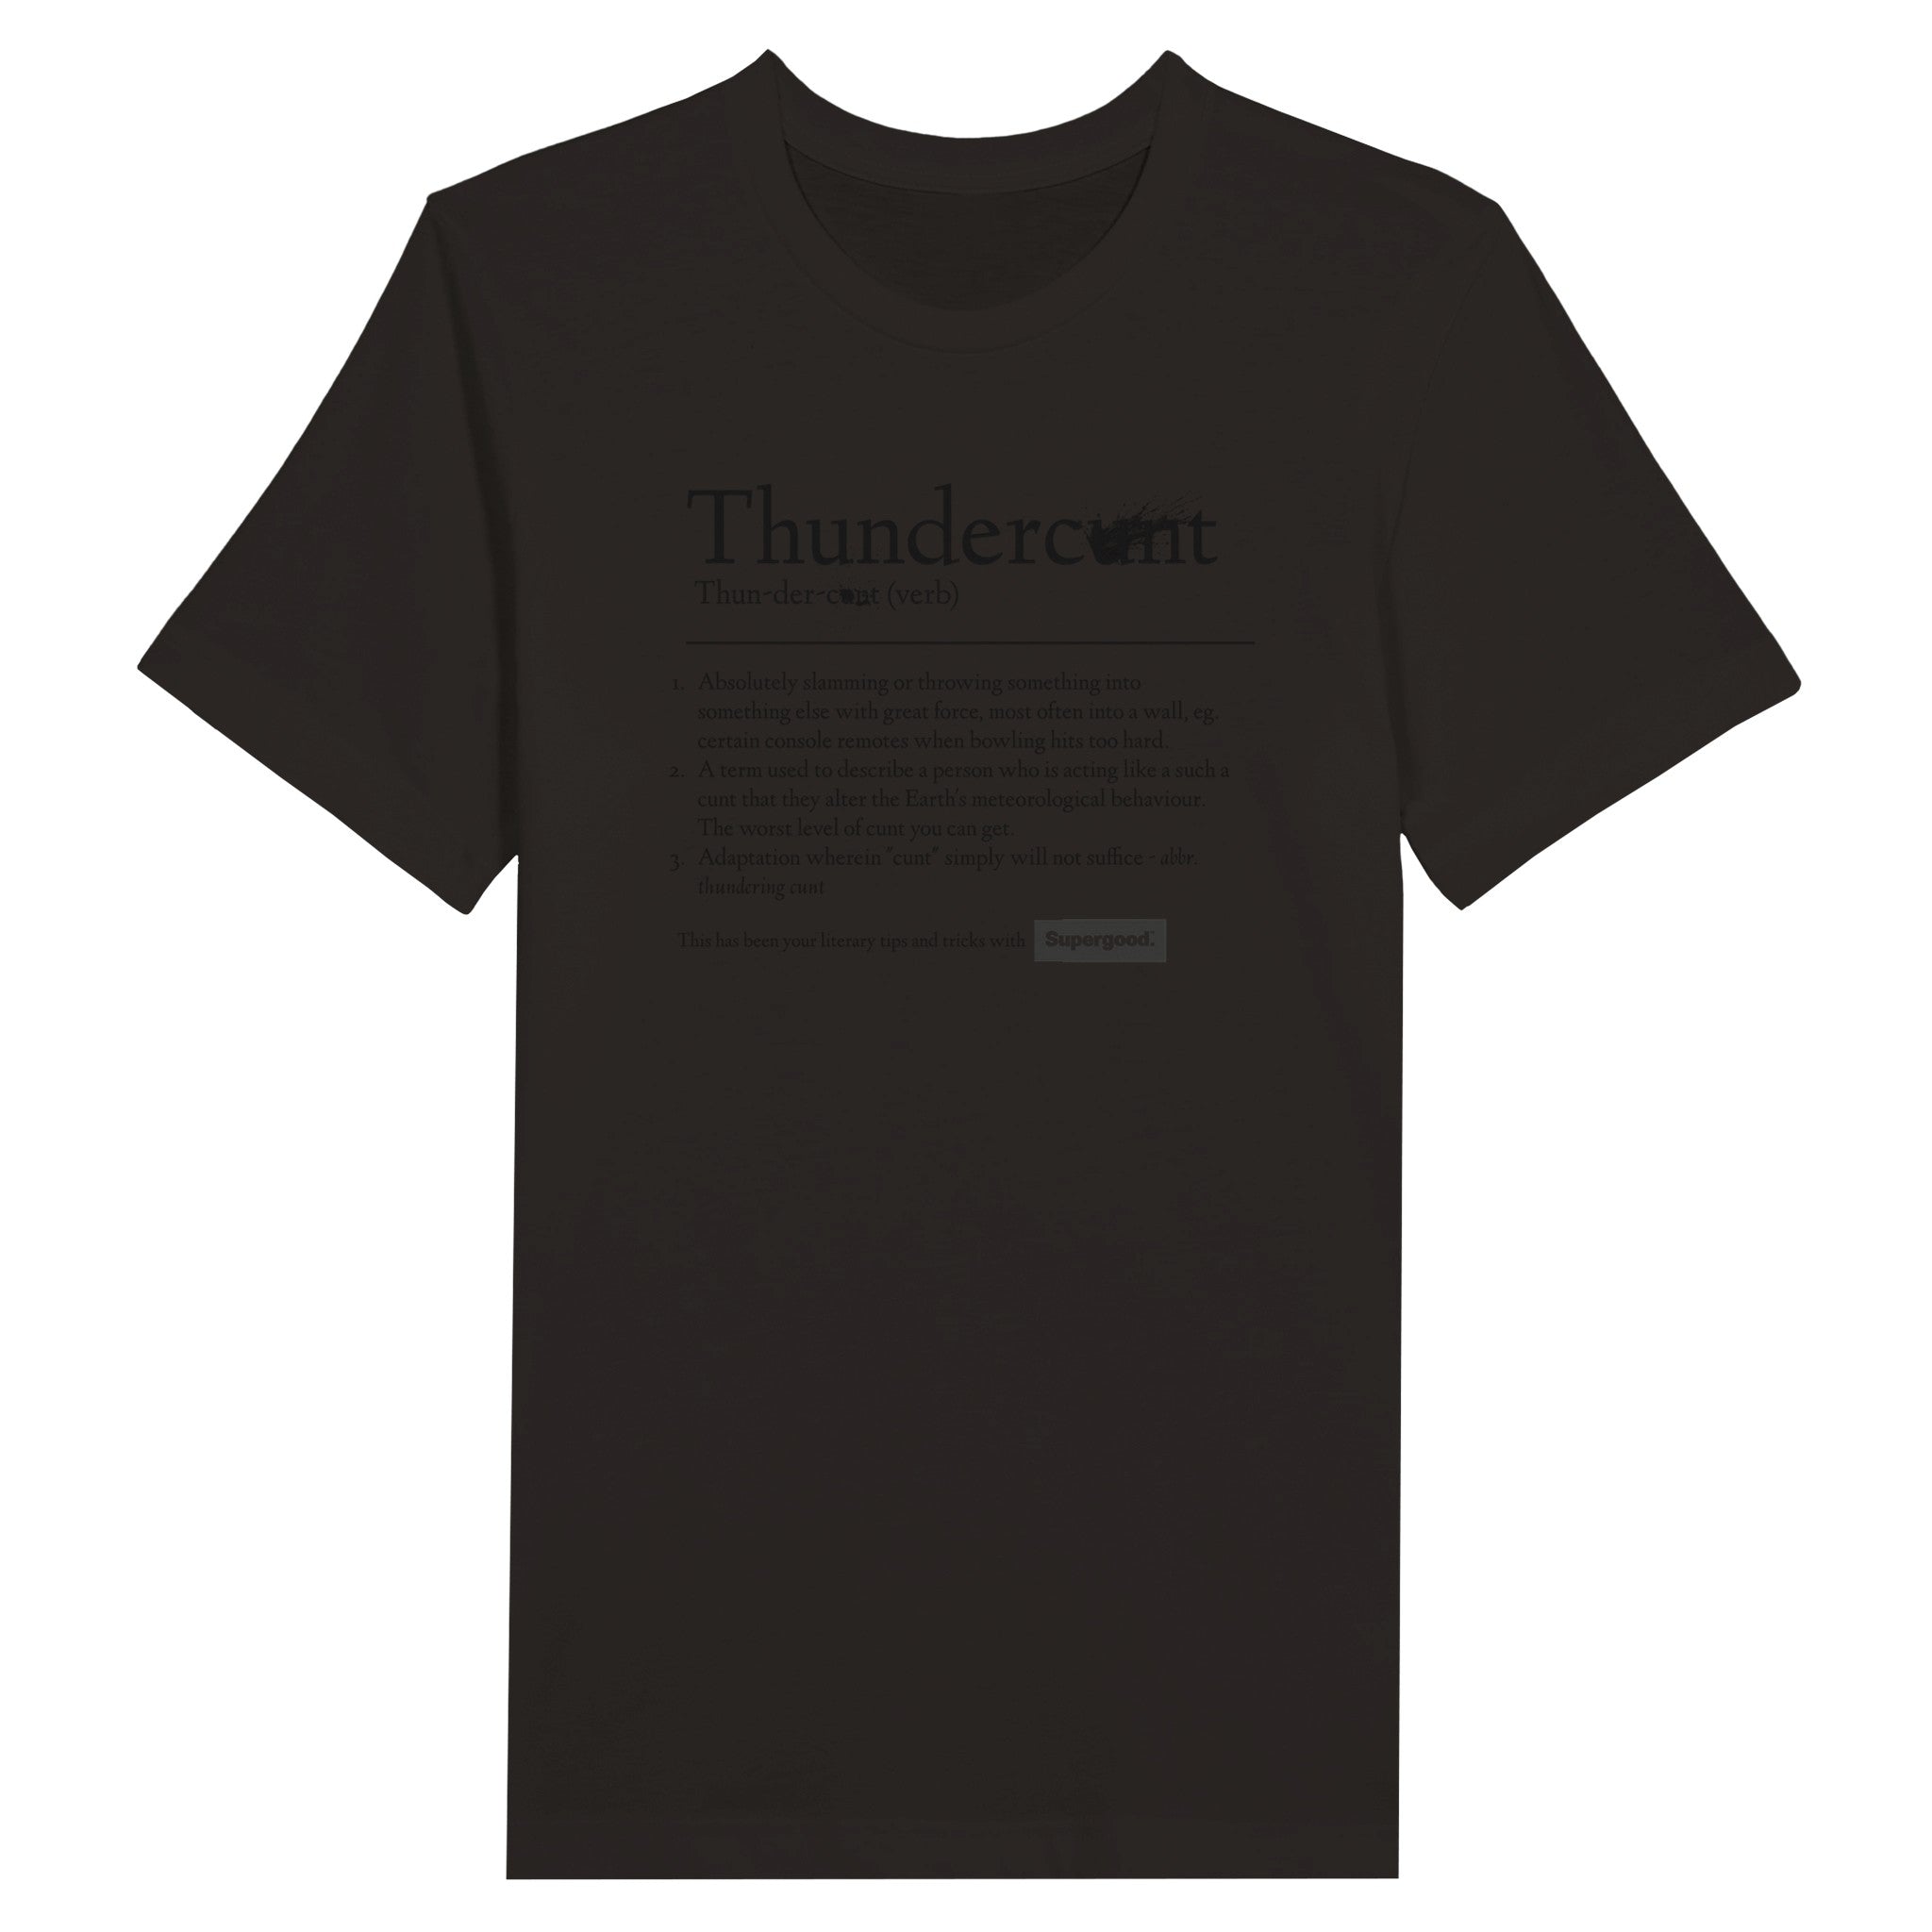 Thunderc*nt Tee, Black Text by Supergood.-Supergood.